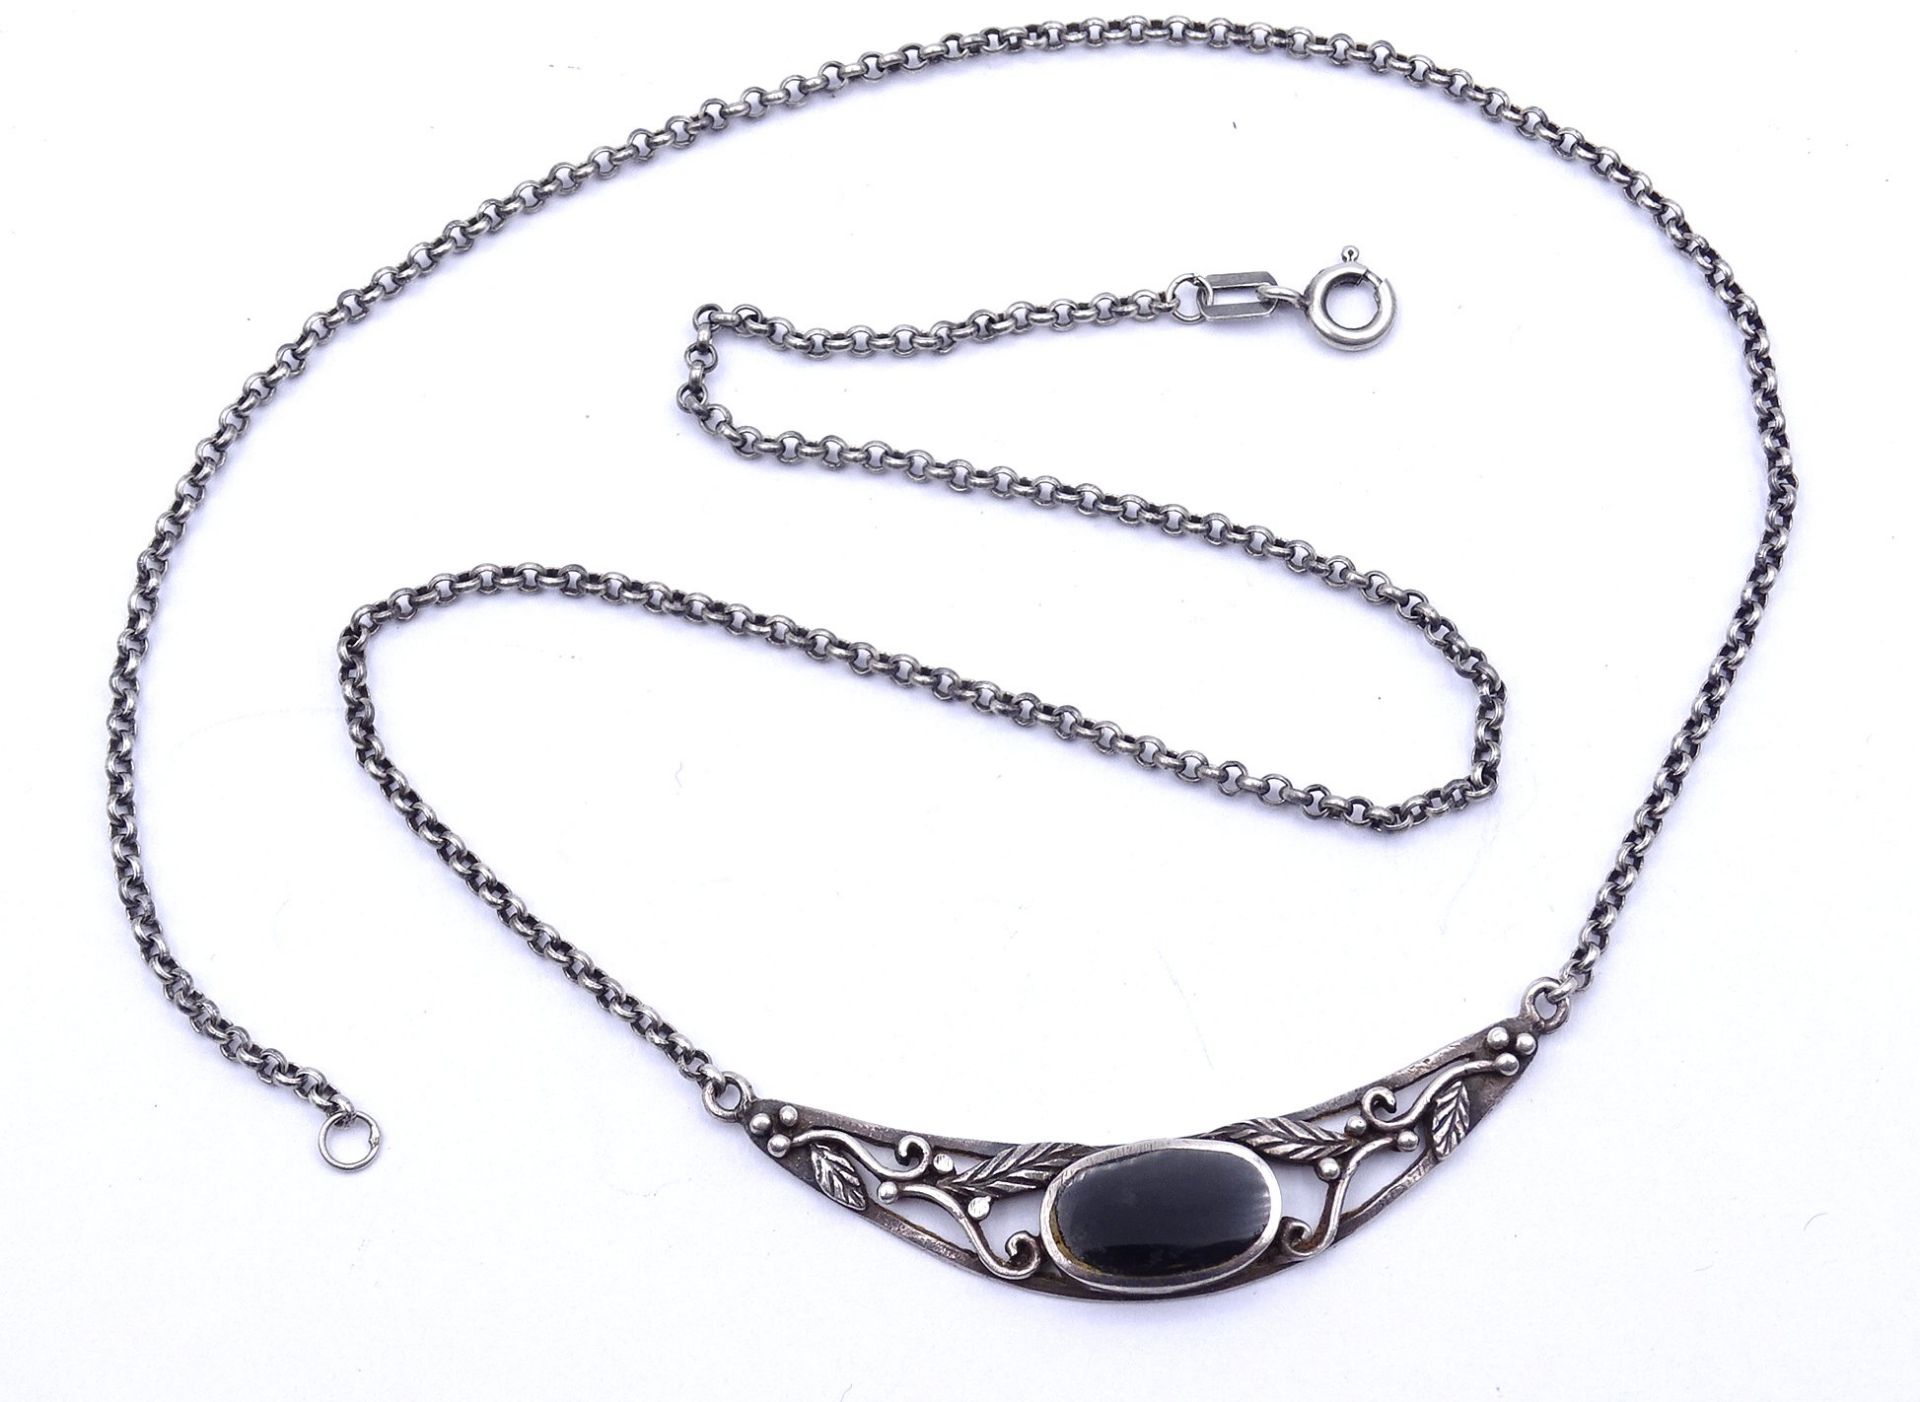 Halskette mit schwarzen Stein, Silber 0.925, L. 47cm, 7,3g.